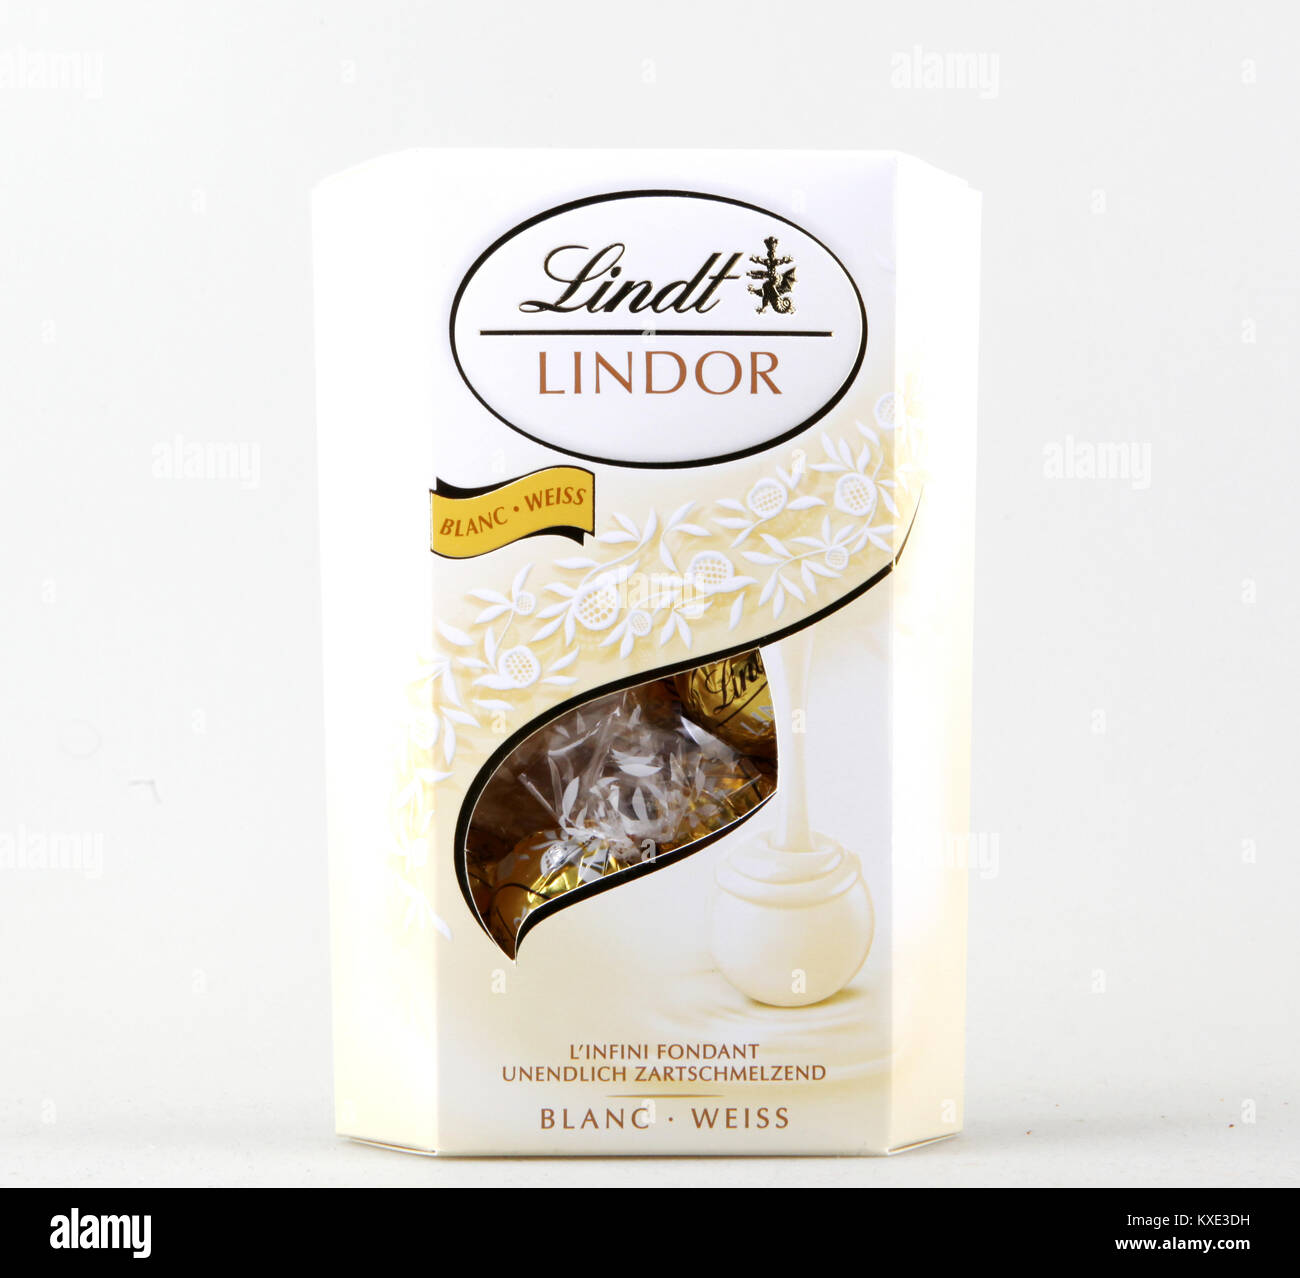 Boules Lindor - chocolat blanc - 500g